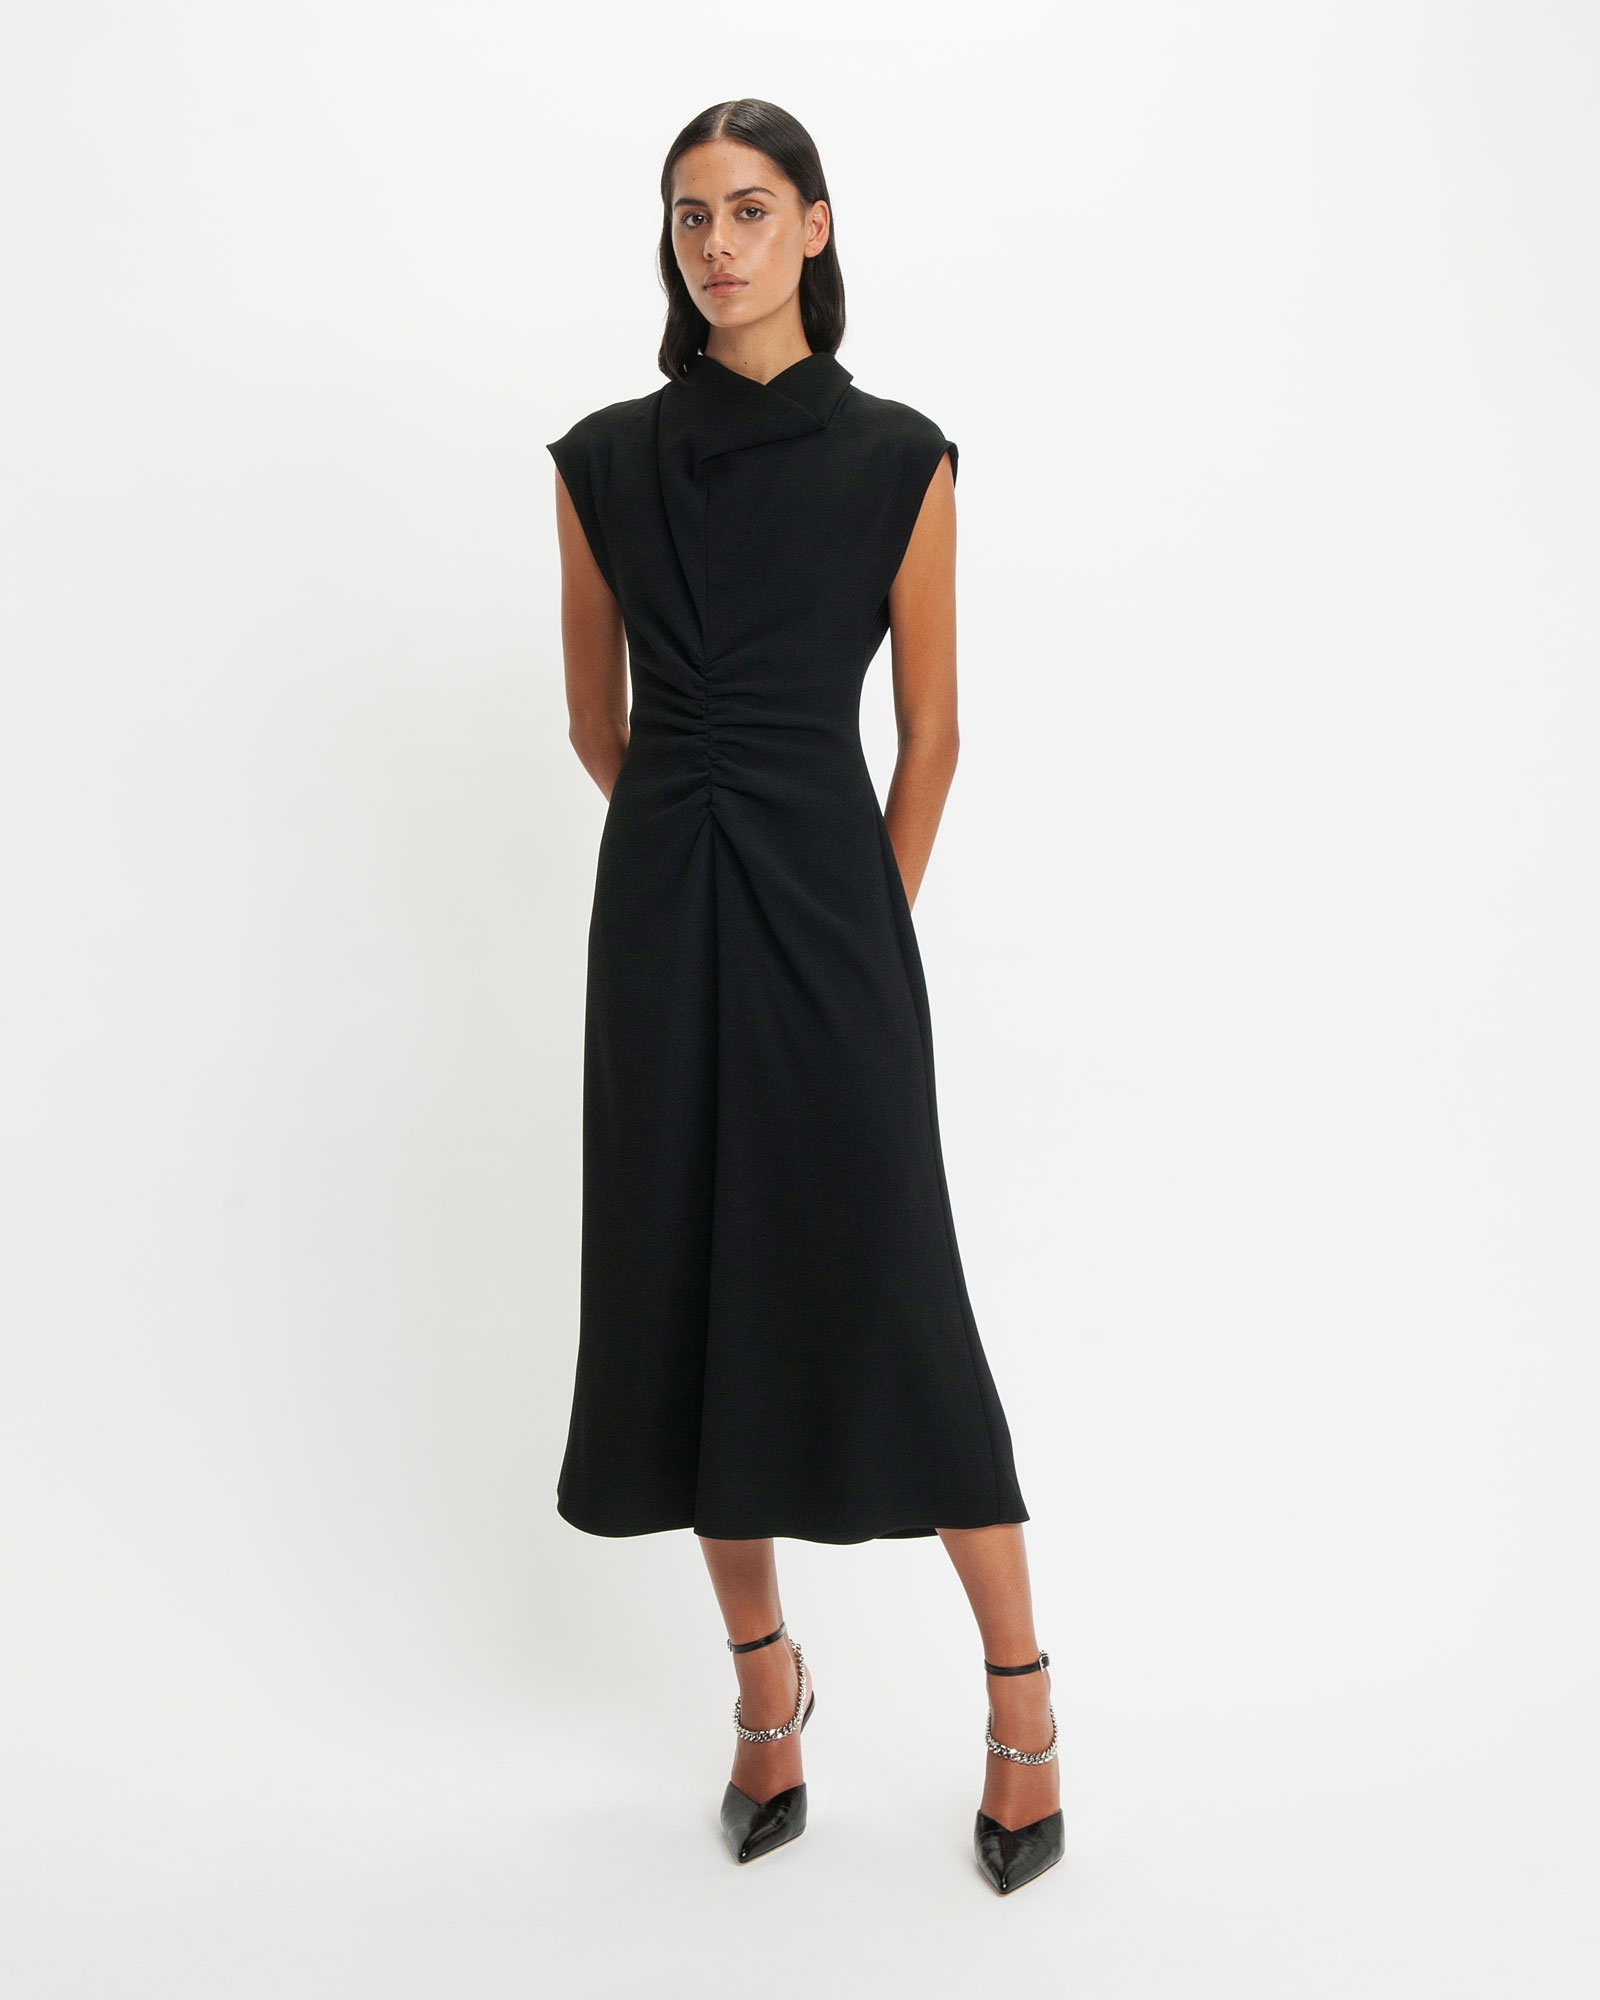 Dresses | Black Draped Neck Midi Dress | 990 Black